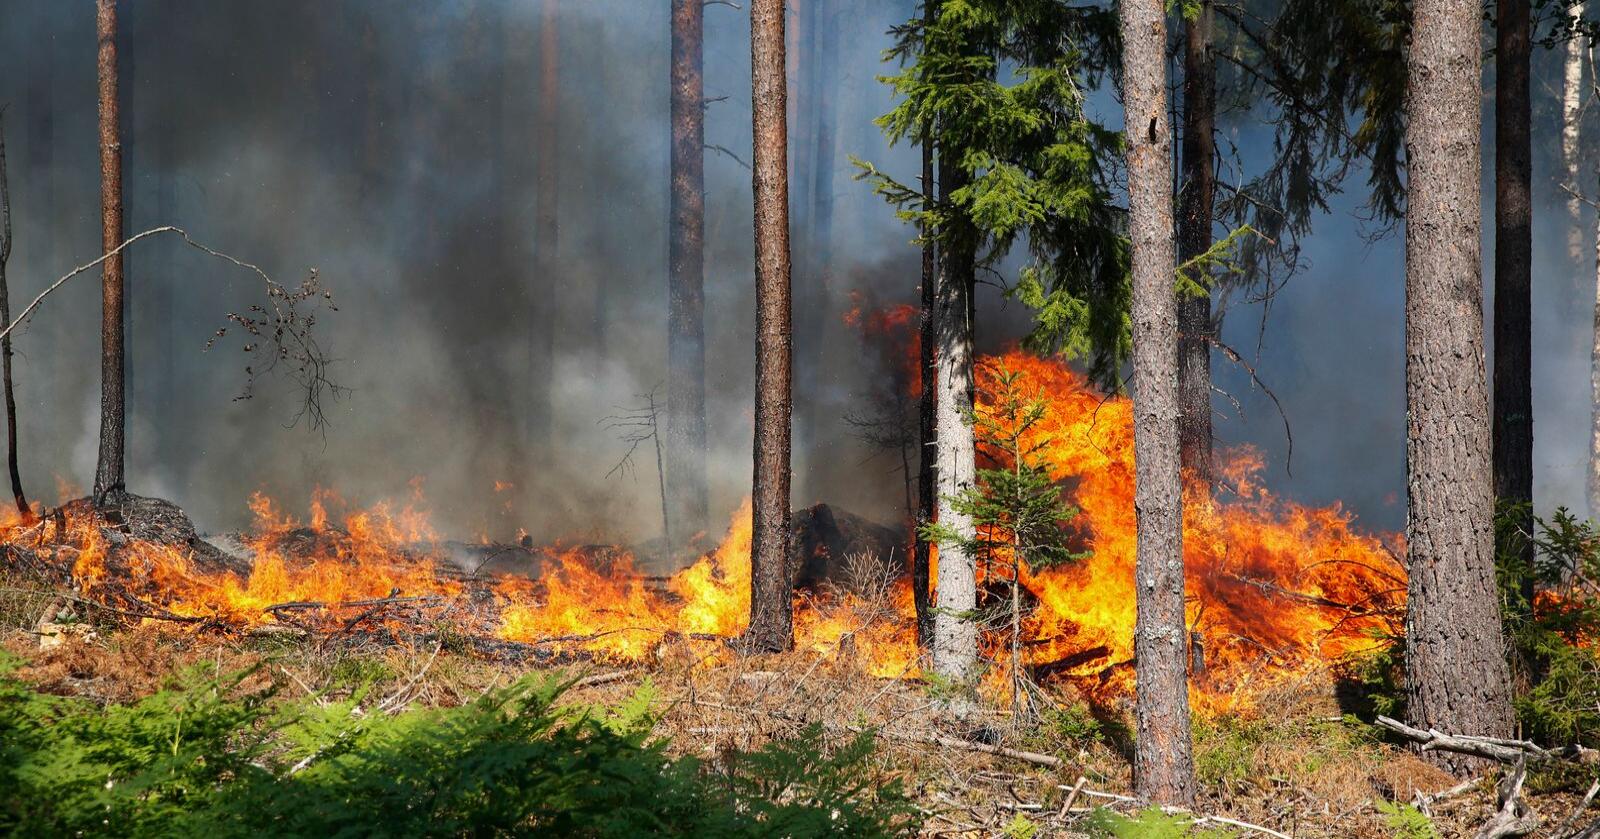 Så mange som en av ti skogbranner i Sverige kan skyldes skogsdrift. Her fra en skogbrann i Sverige i 2014. Foto: FREDRIK PERSSON / TT / NTB scanpix